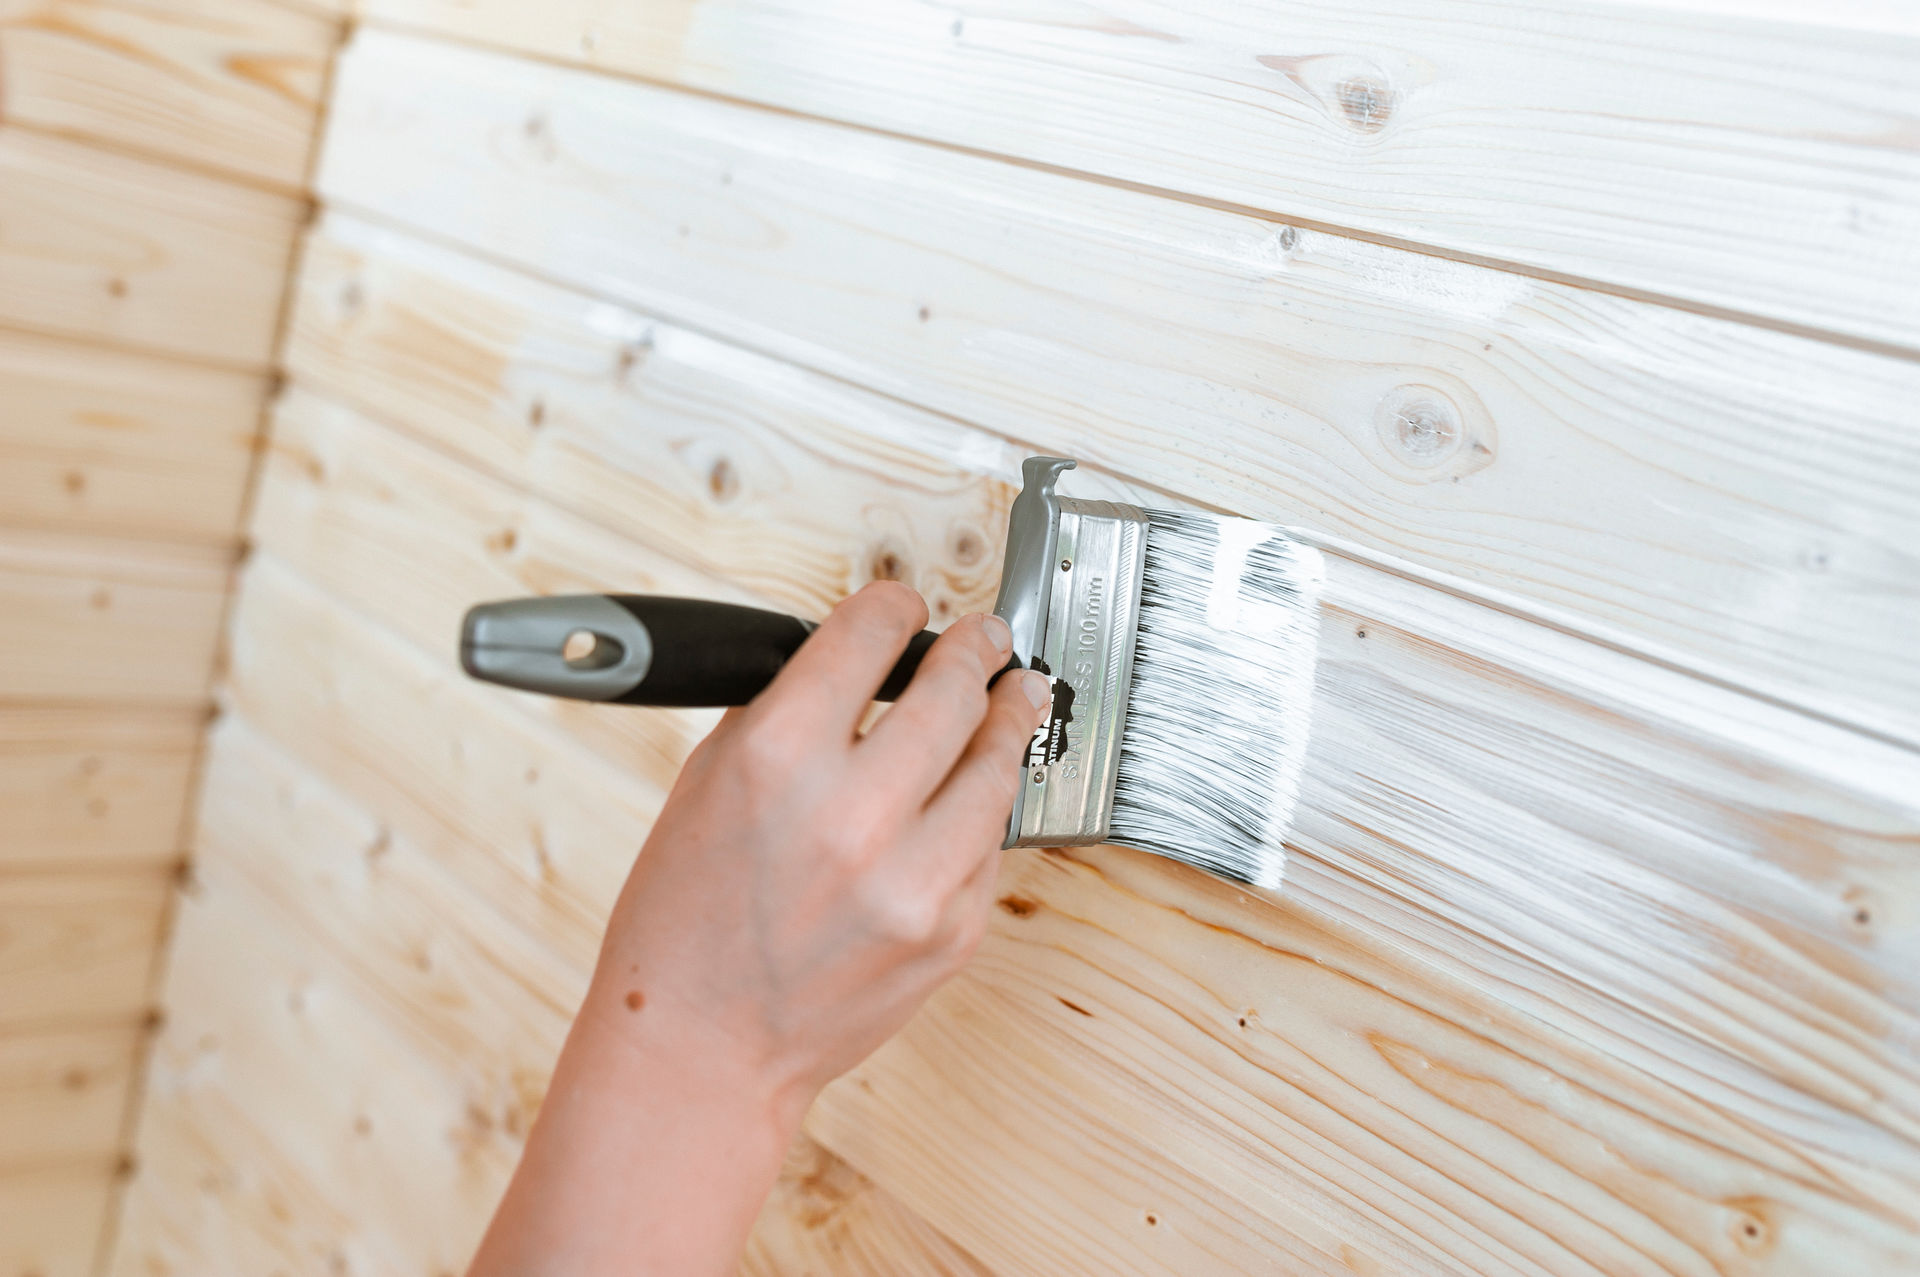 Holztafelwand - Prüfen Sie die besten Ideen zum Streichen von Holzverkleidungen